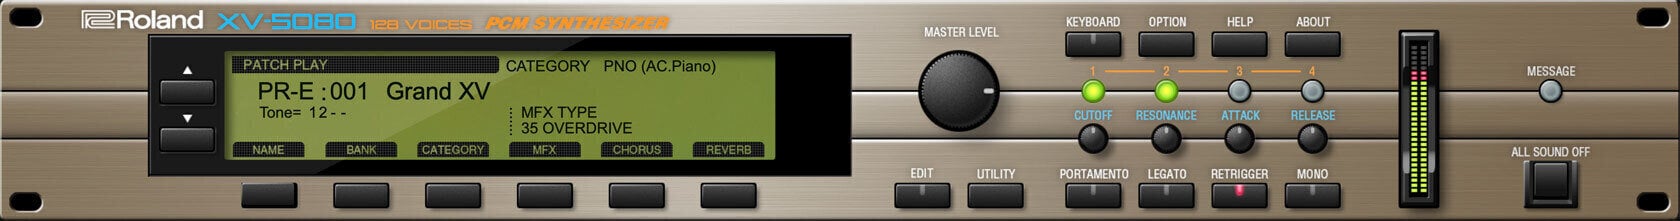 Program VST Instrument Studio Roland XV-5080 Key (Produs digital)